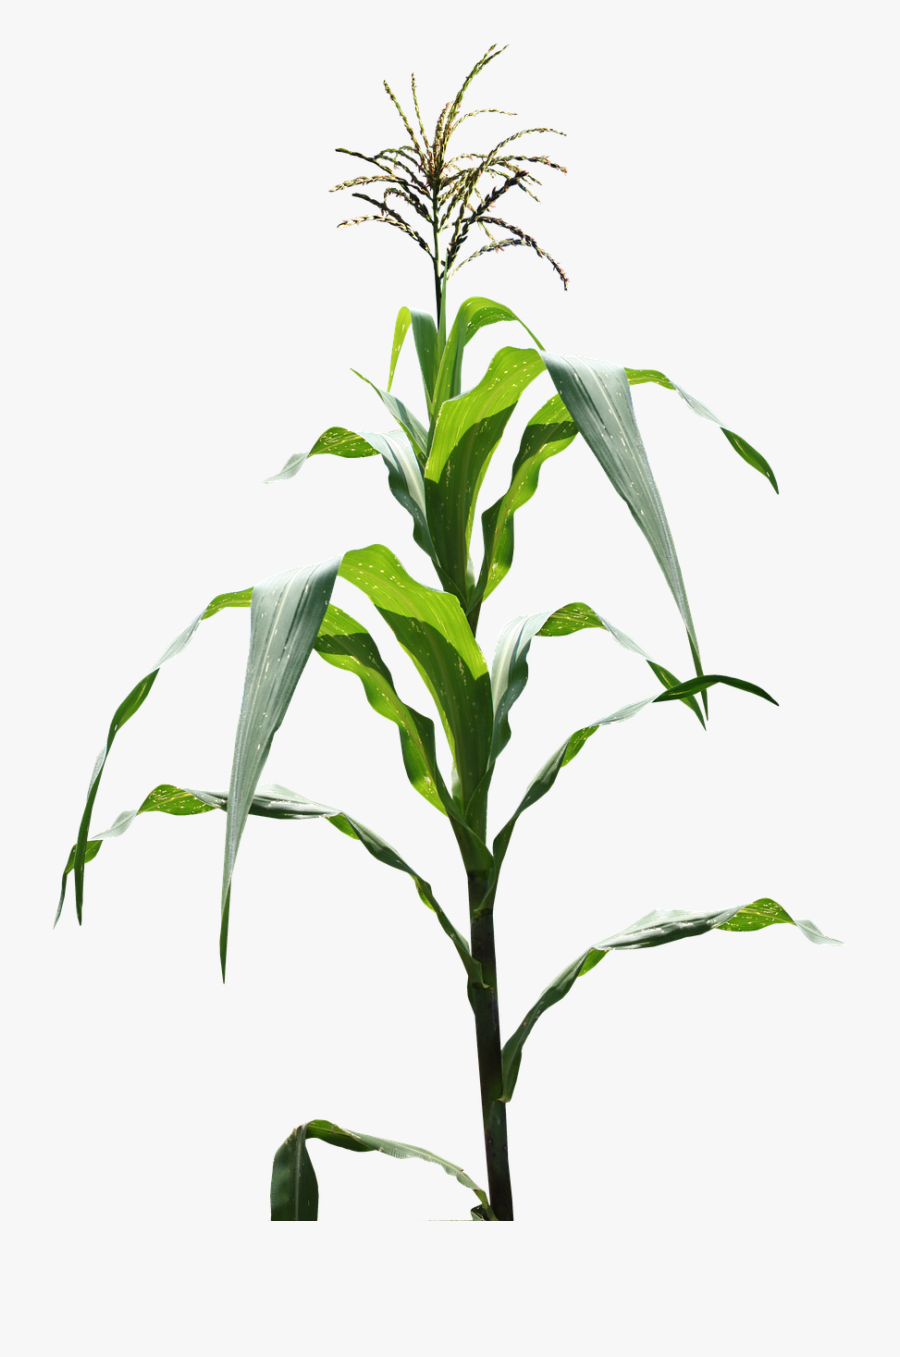 Corn Plant Images Png, Transparent Clipart